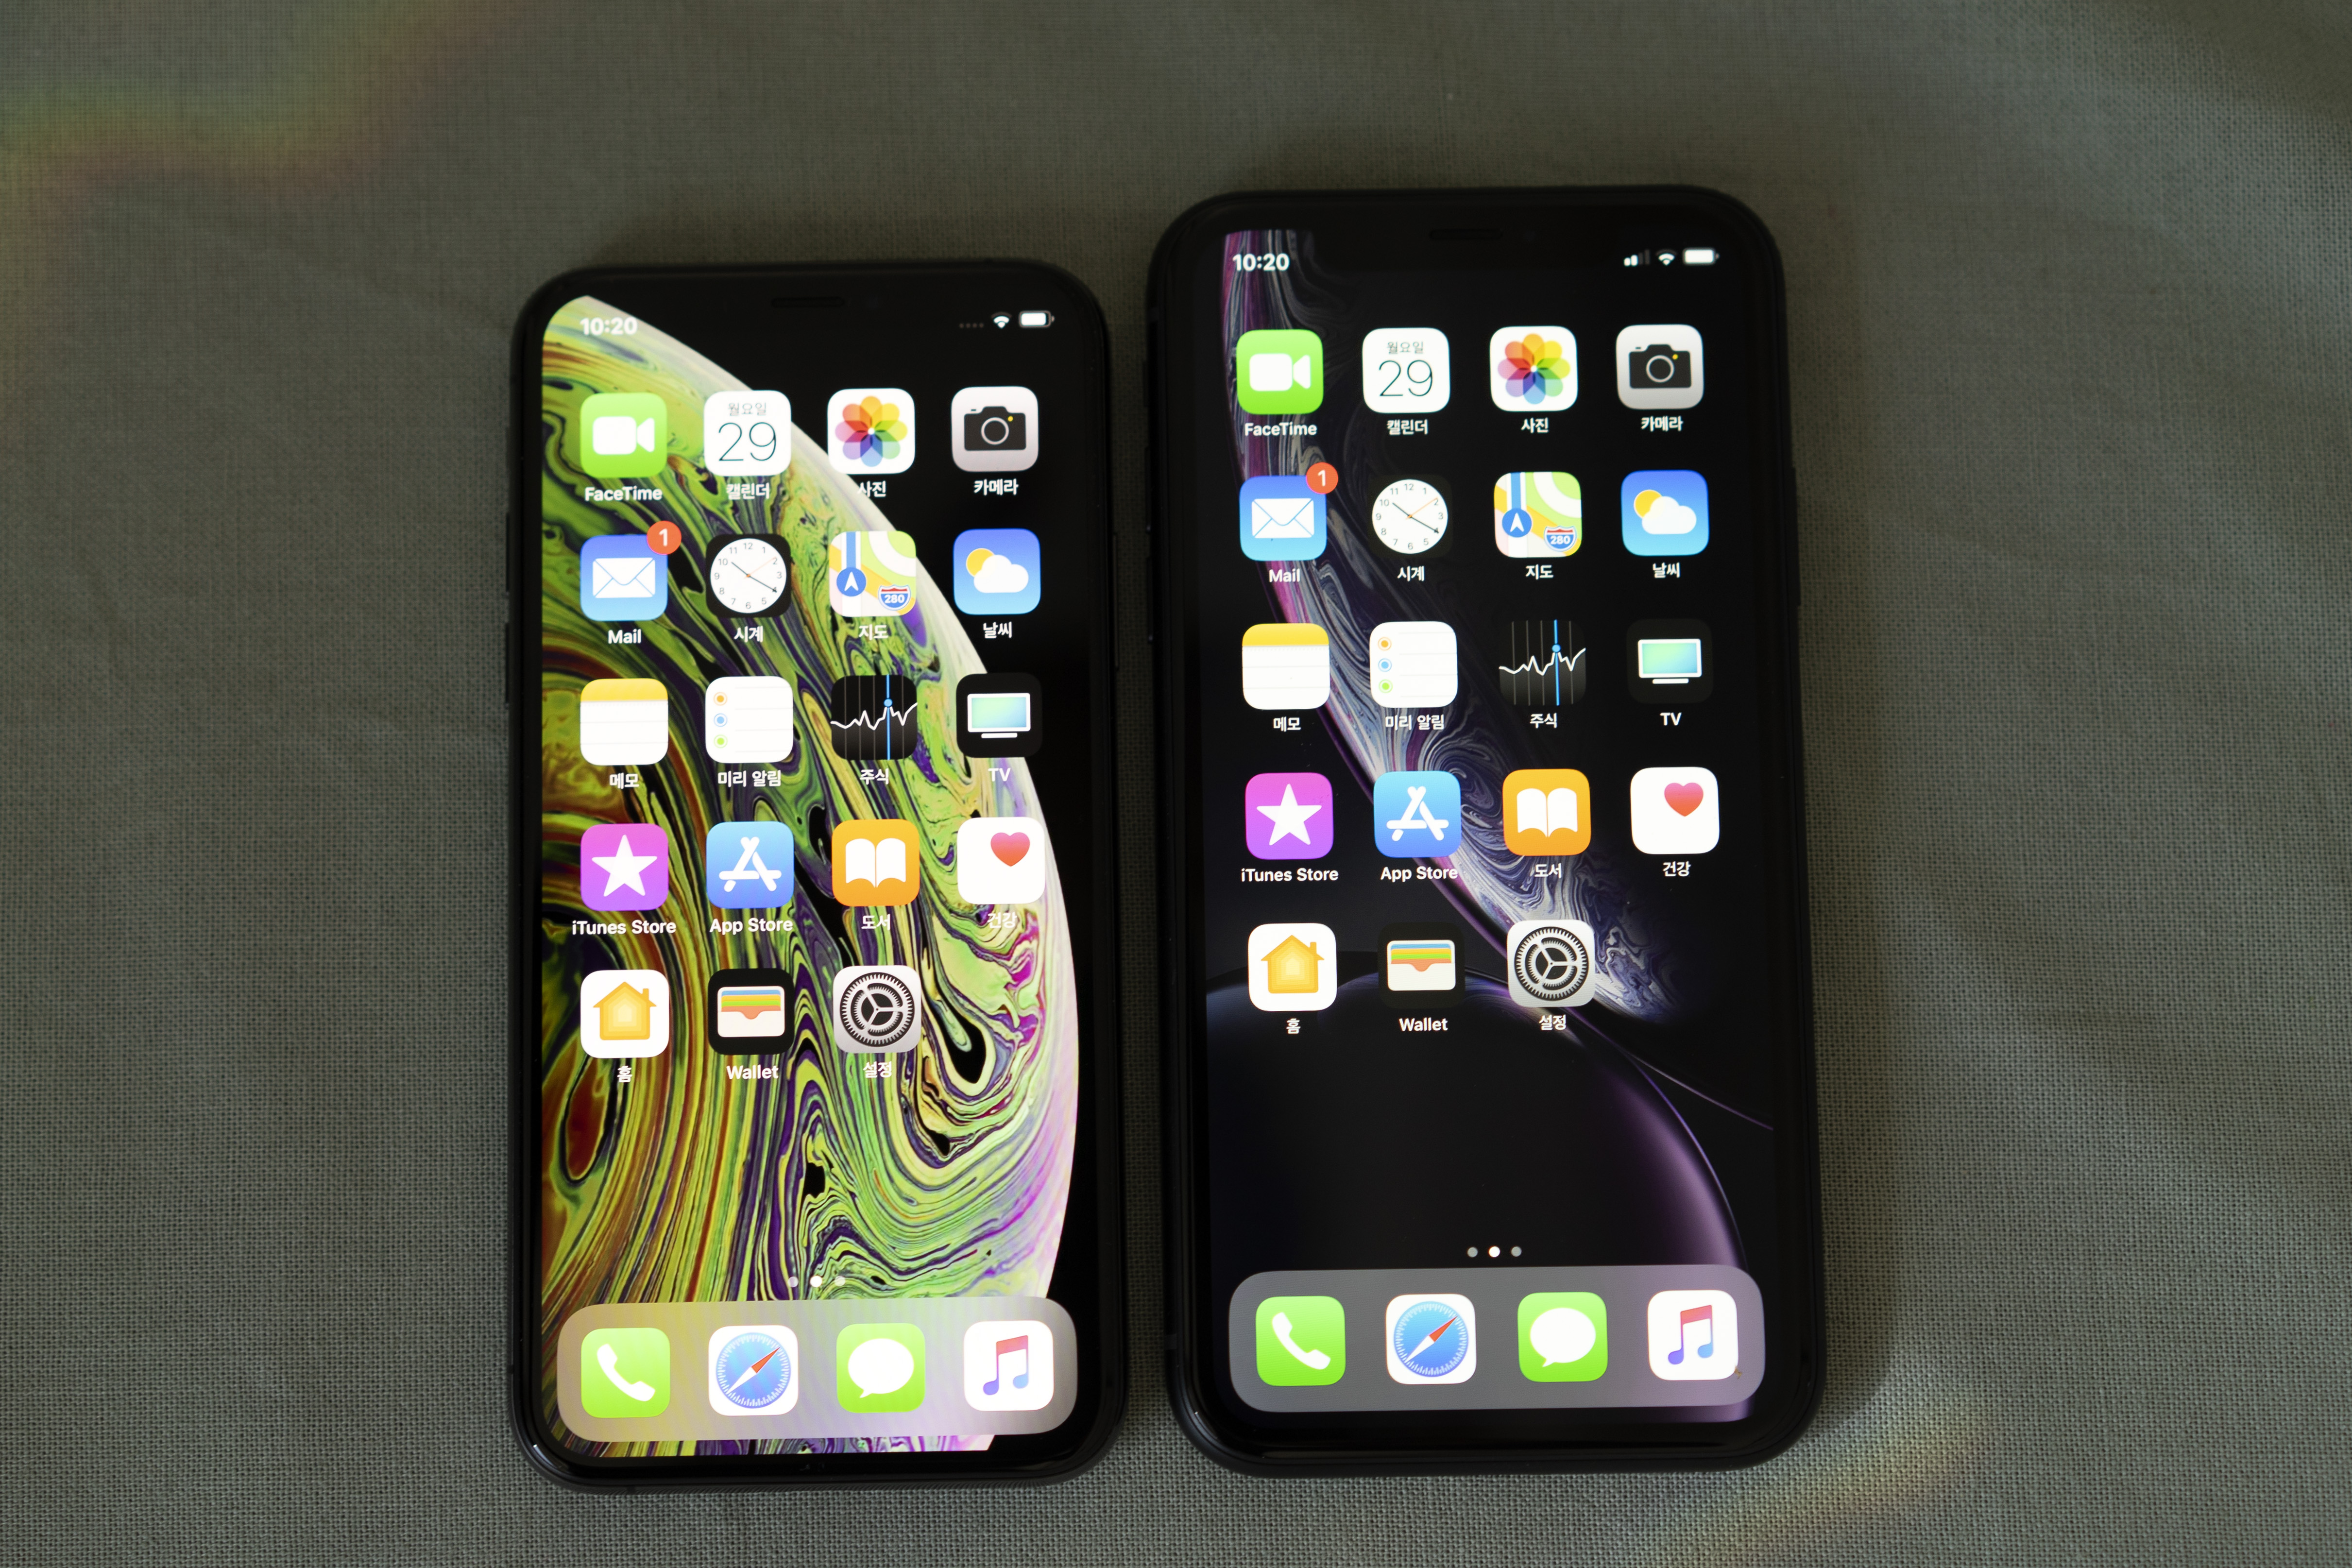 ▲  | 아이폰 XS(왼쪽)과 아이폰 XR. 0.3인치 크고 해상도는 낮지만 iOS에서는 아이폰XR을 큰 화면으로 분류해서 더 많은 정보를 띄워준다.